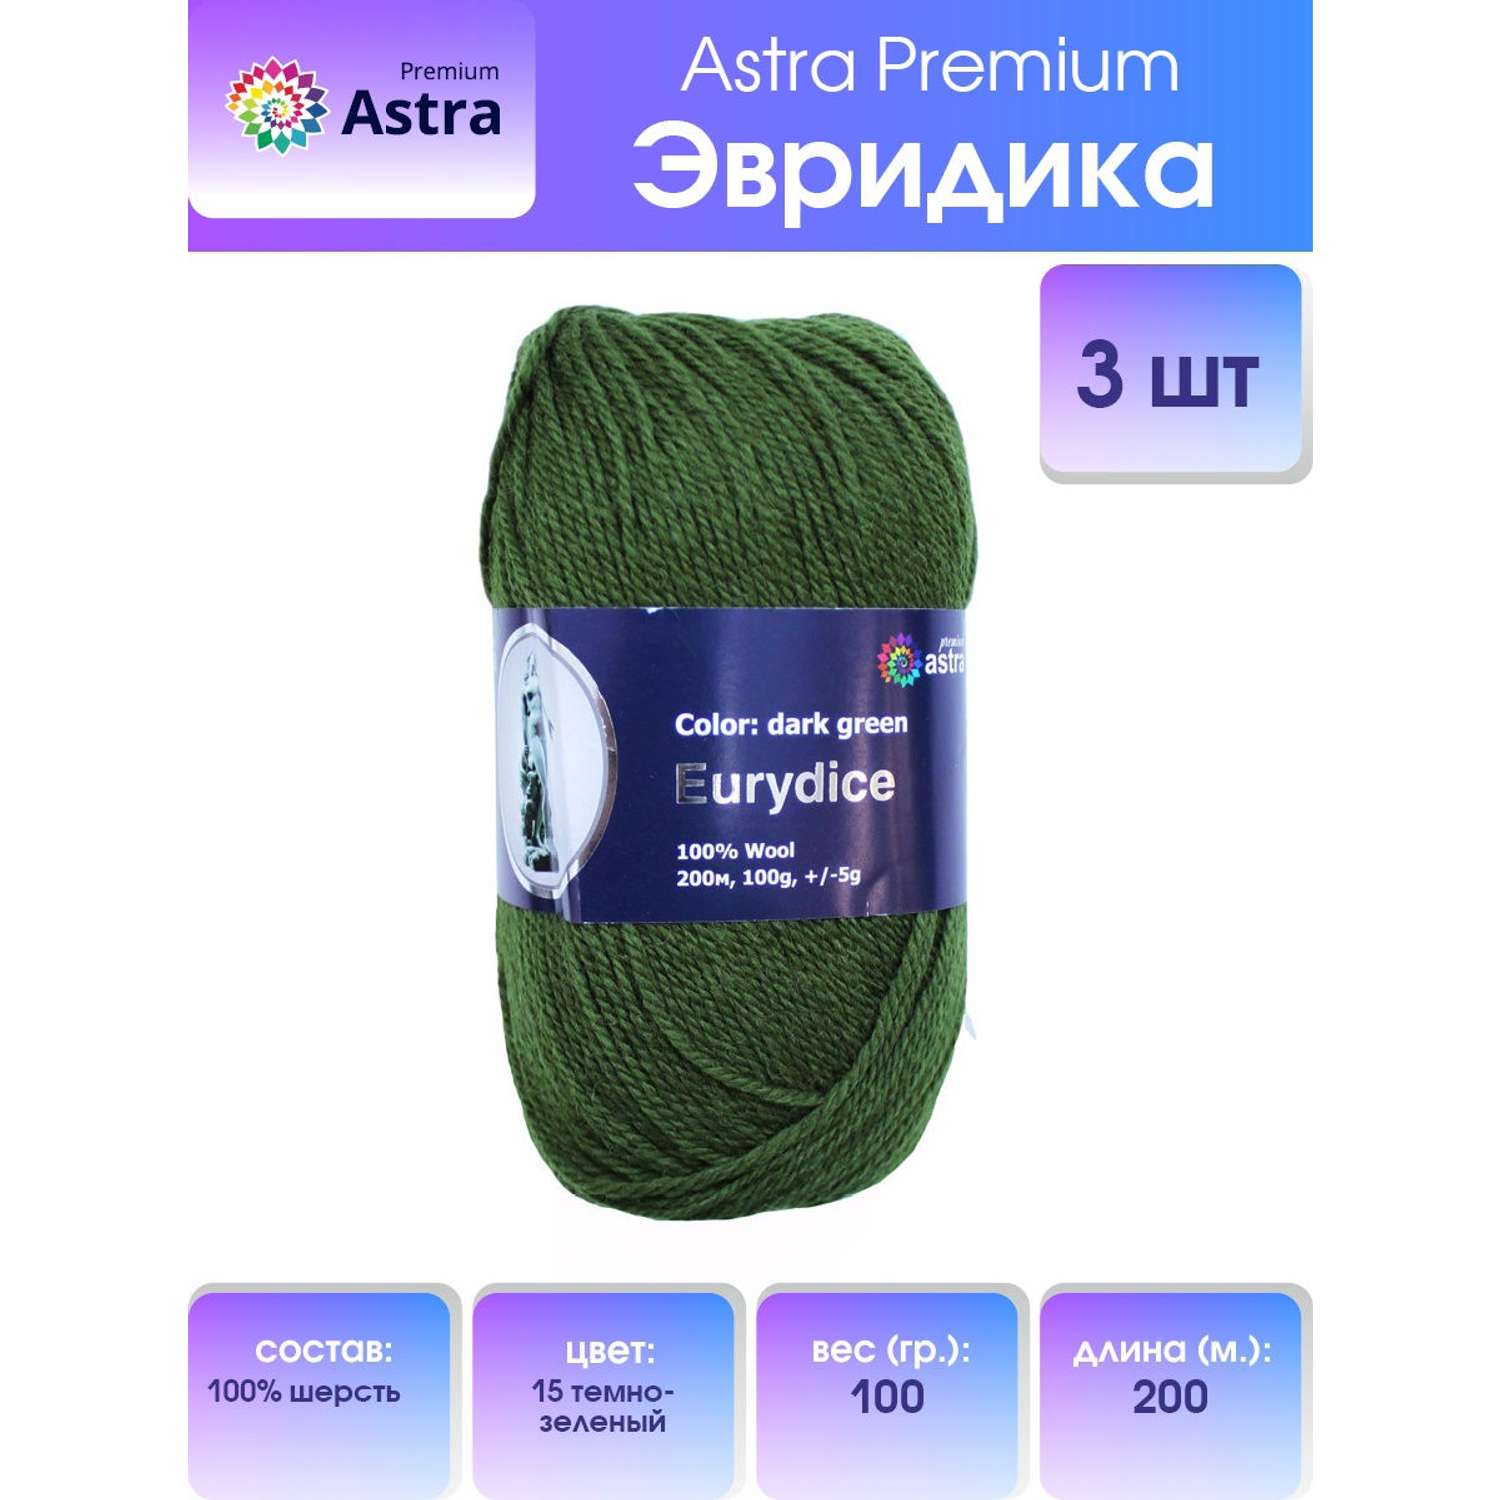 Пряжа Astra Premium Эвридика шерстяная 100 г 200 м 15 темно-зеленый 3 мотка - фото 1